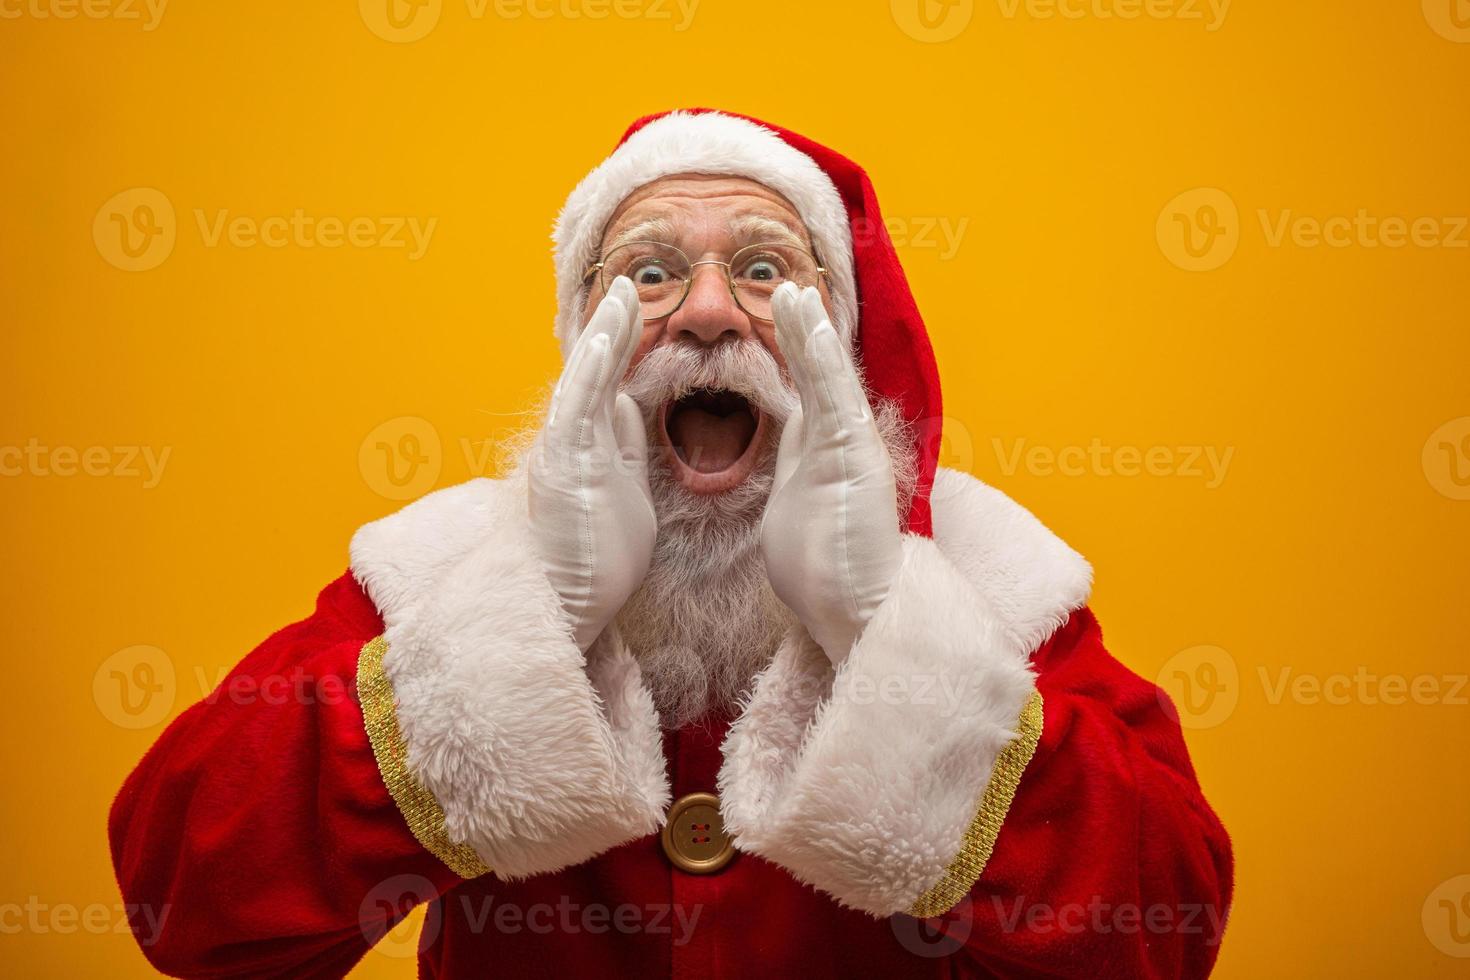 kommunikation koncept. profilbild från sidan av upphetsad rolig snäll snygg jultomte med öppen mun håll handflatan nära ansiktet som säger högt ho-ho-ho isolerad på livlig gul bakgrund foto